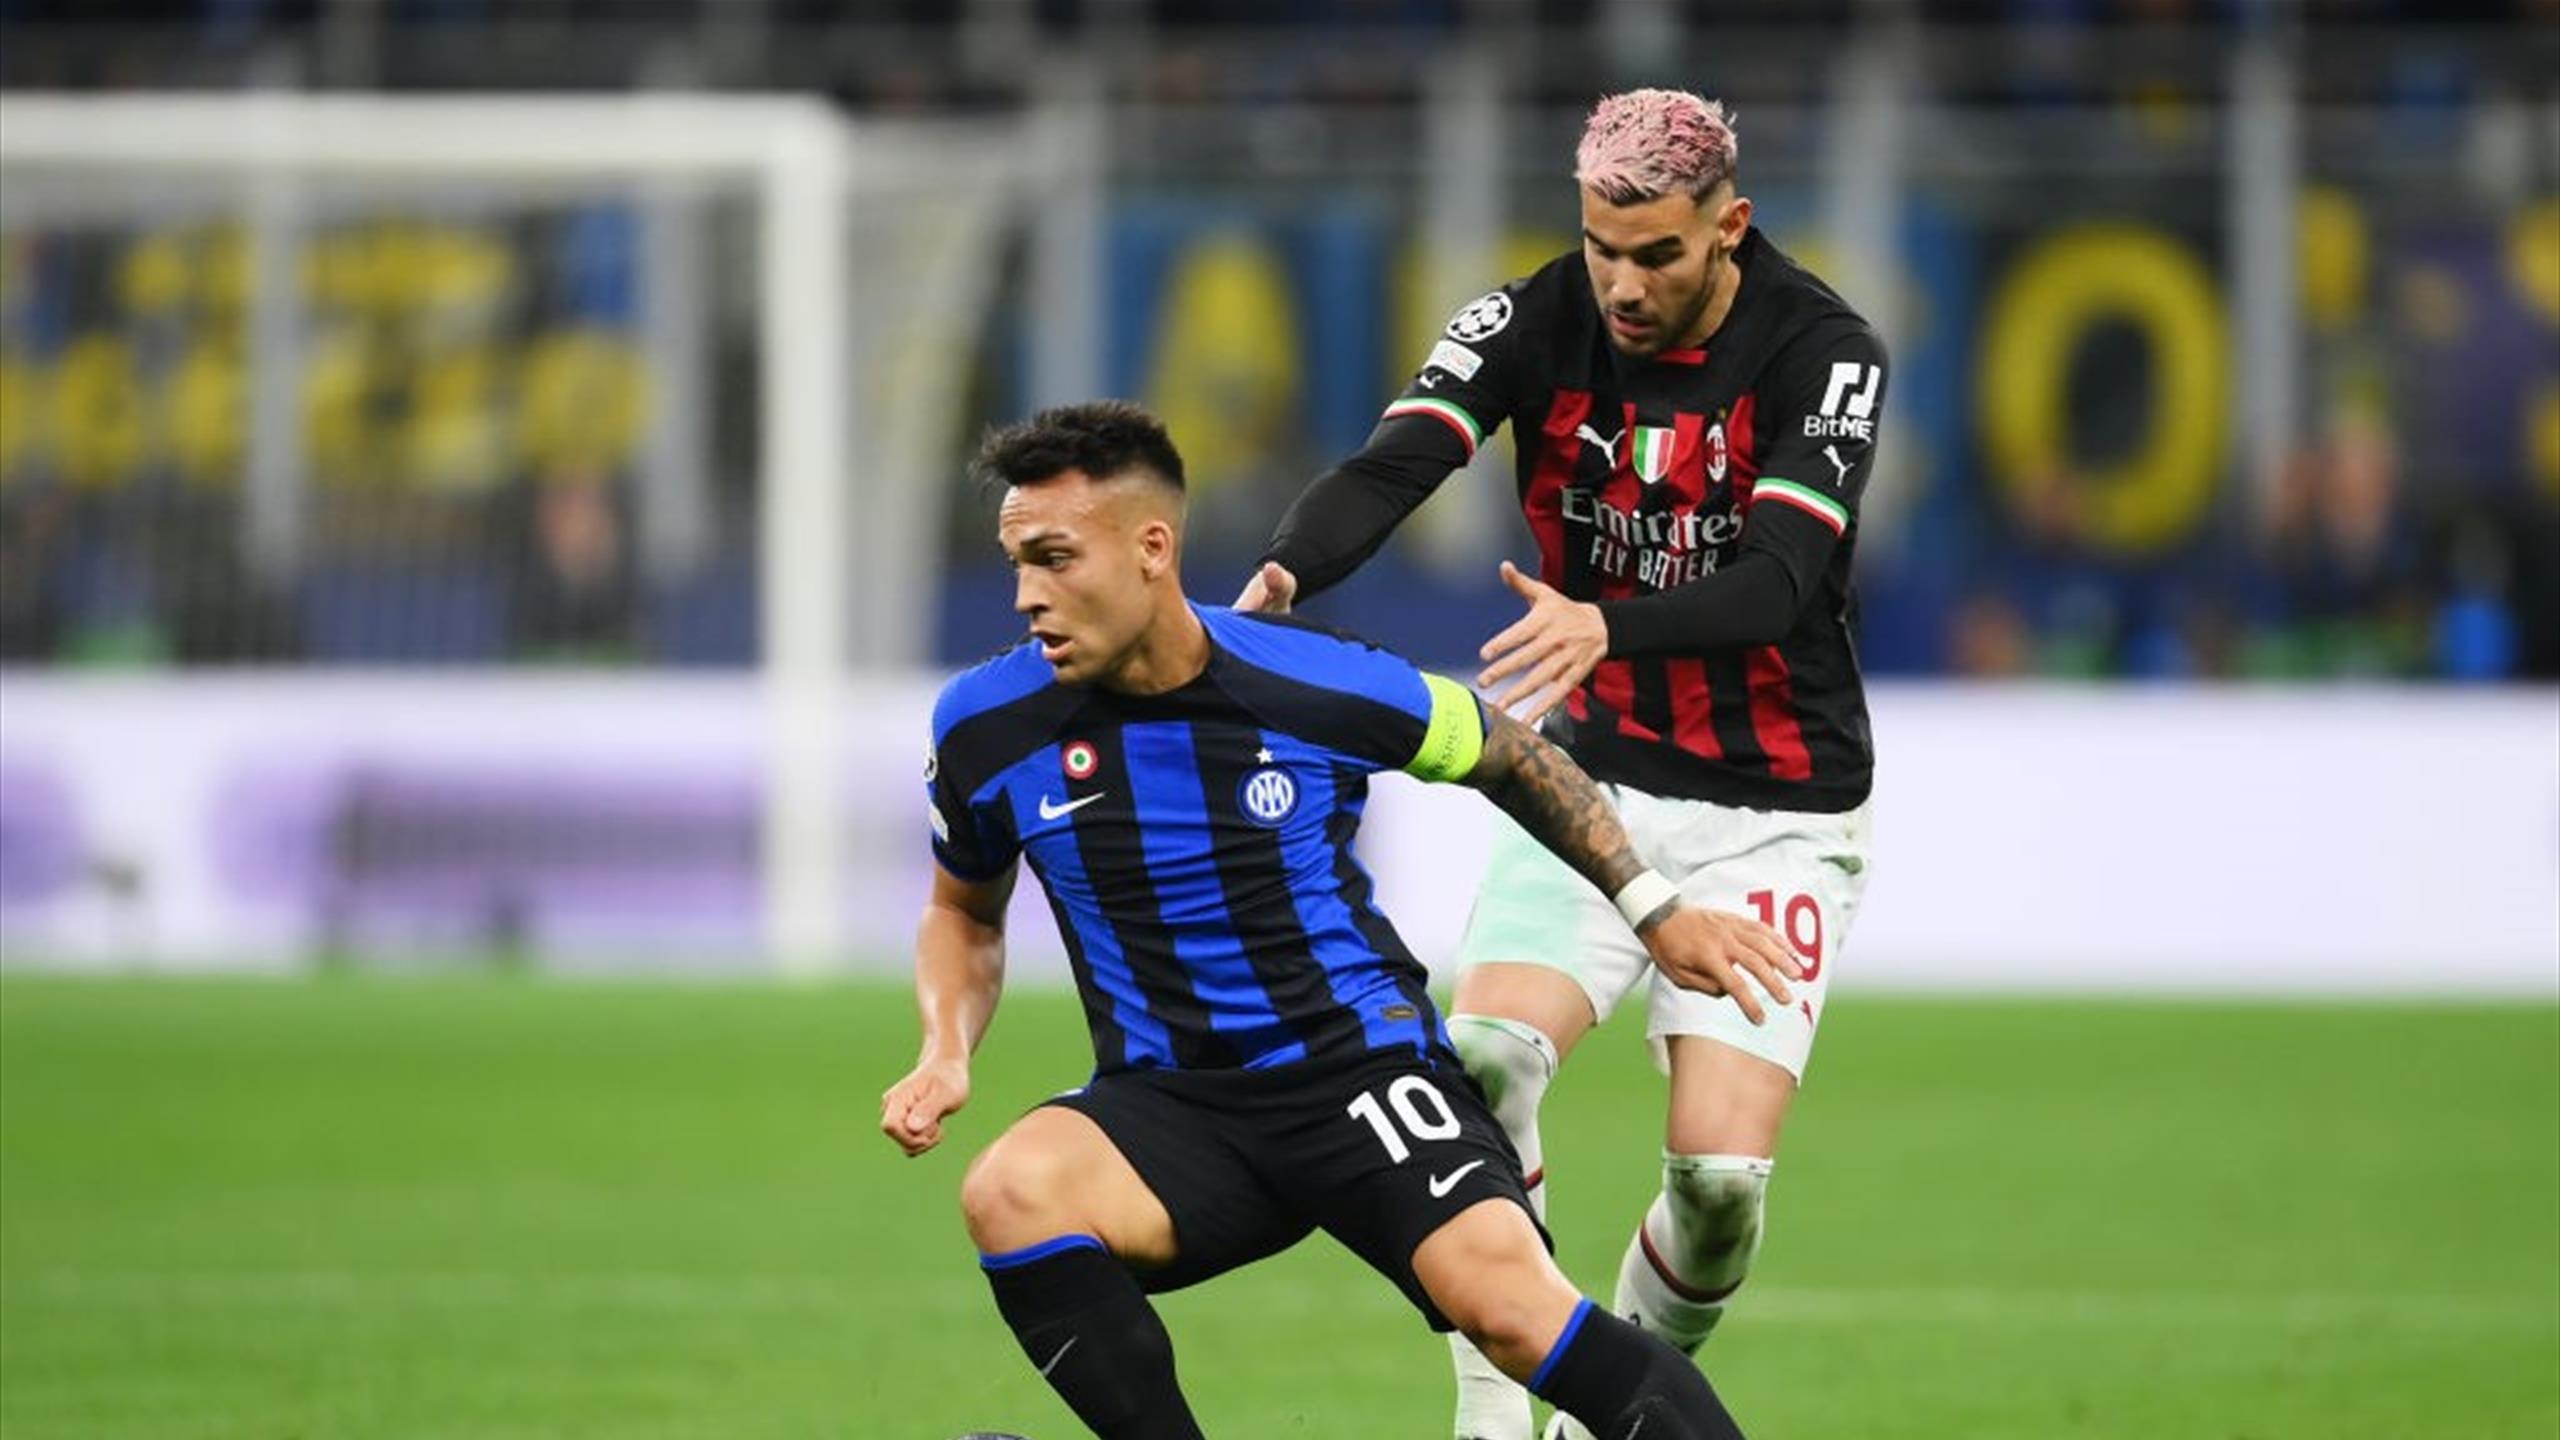 Si parte con Frosinone-Napoli, derby Inter-Milan alla 4ª giornata